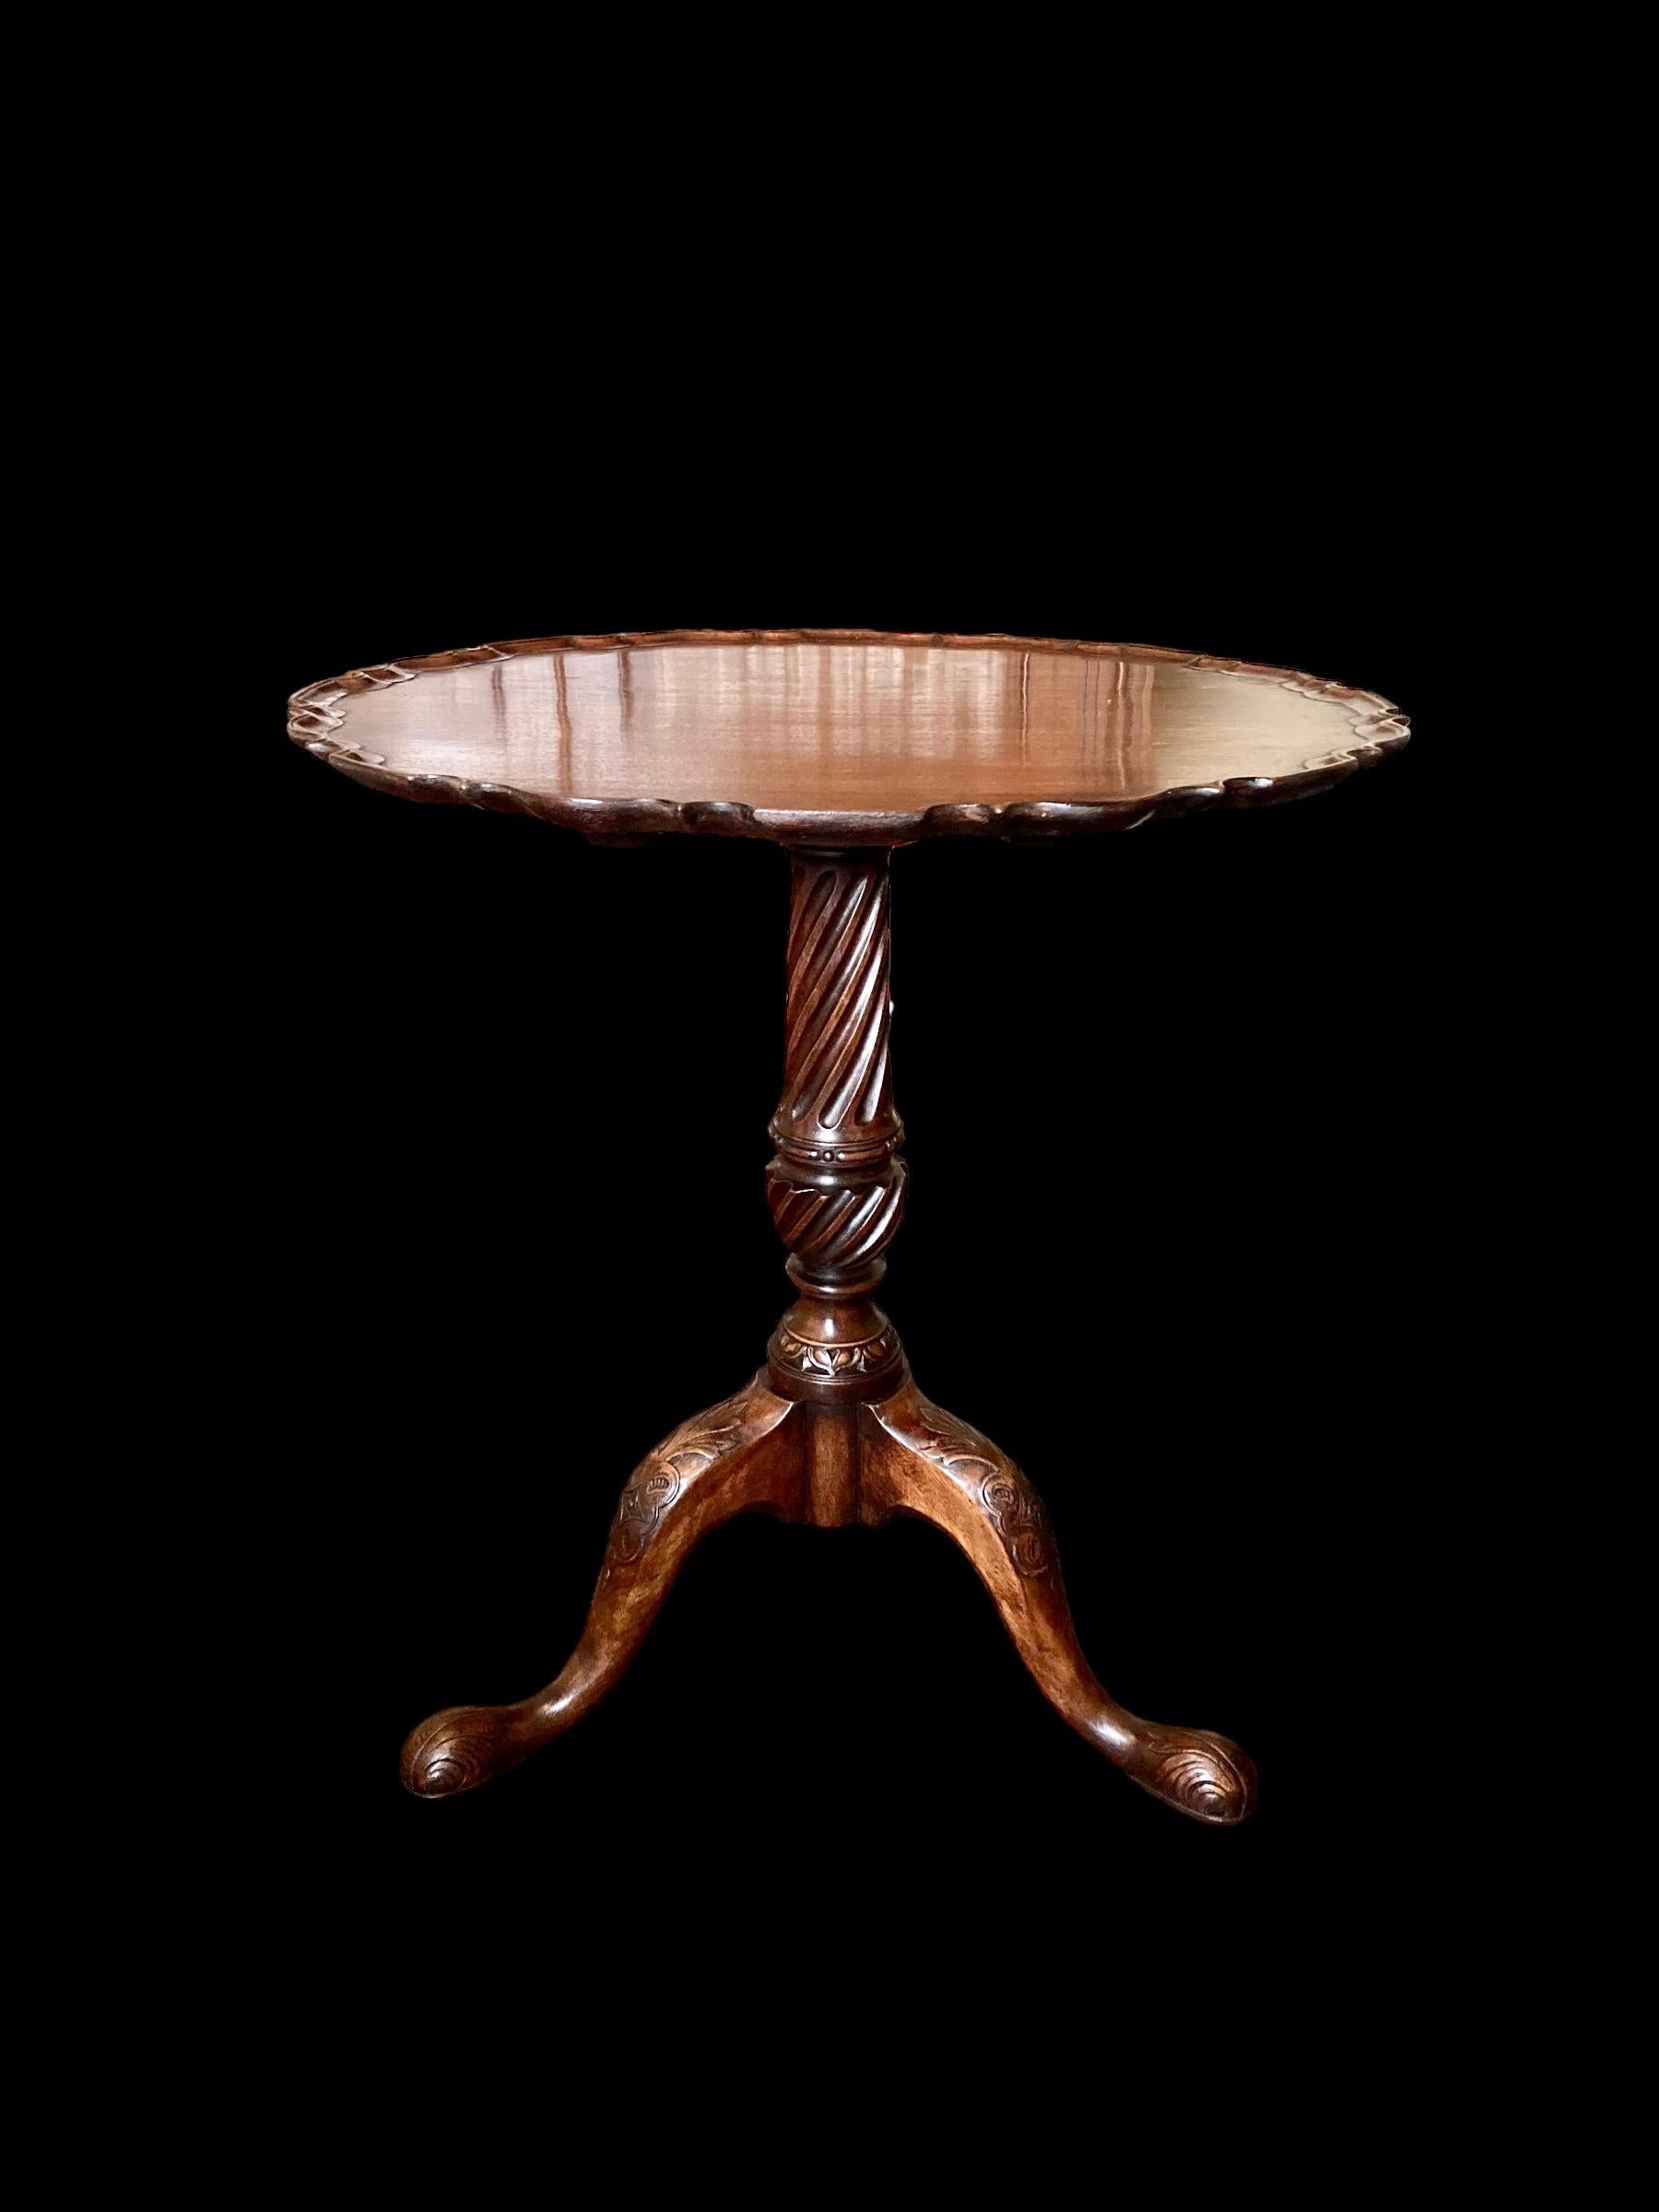 Ein reizvoller Mahagoni-Tortenboden, Beistell- oder Teetisch aus dem späten 19. Jahrhundert mit kippbarer Platte. Der Sockel mit einer kräftigen und hübschen kannelierten Säule ruht auf fein geschnitzten, nach unten gerichteten Beinen mit